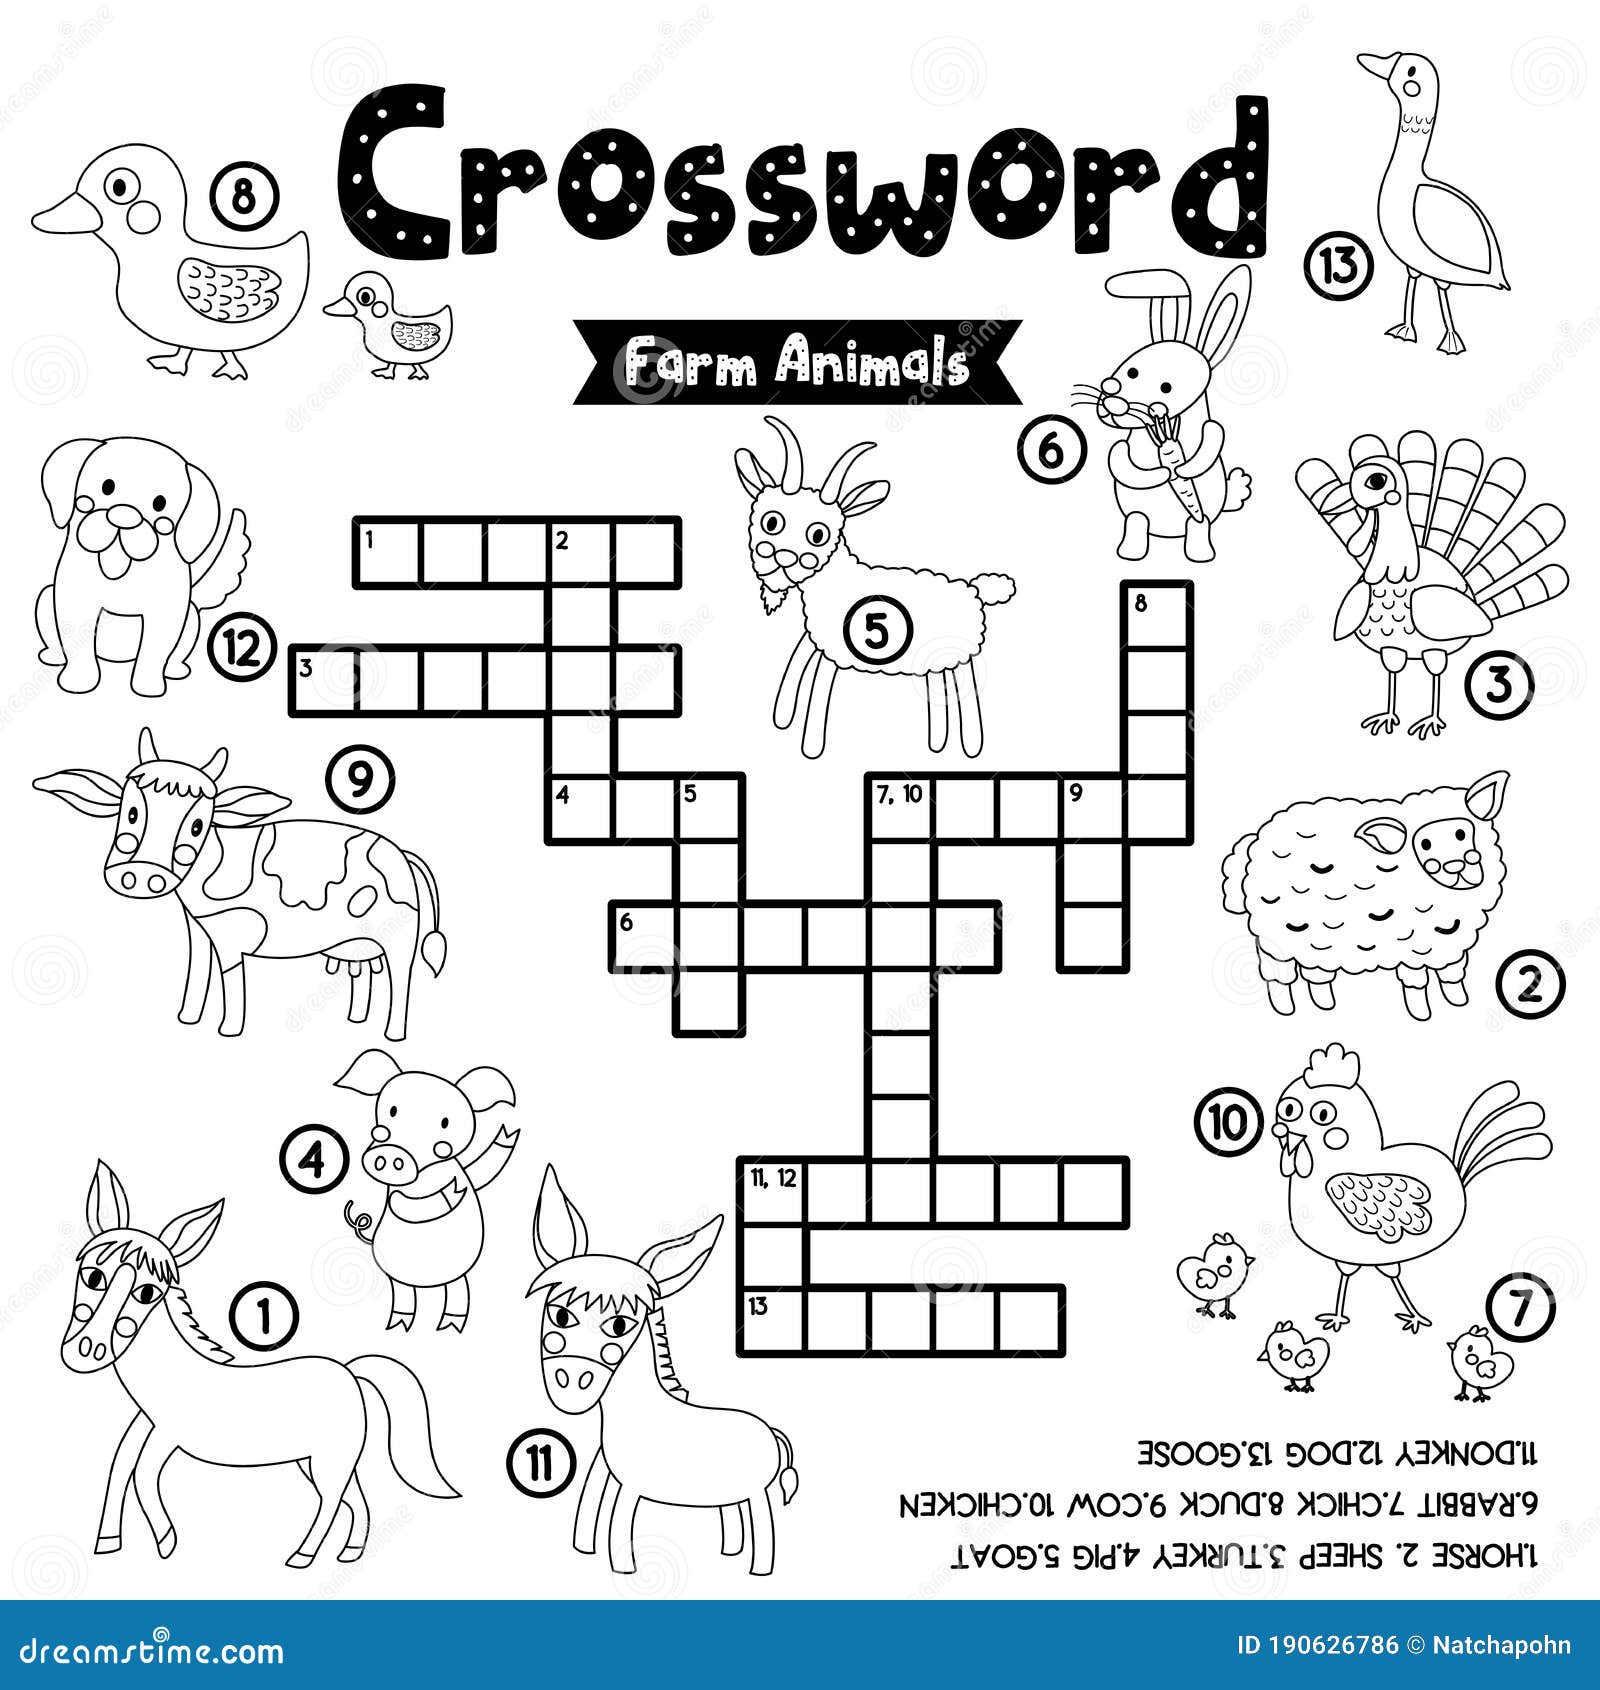 Crossword puzzle farm animals coloring version stock vector